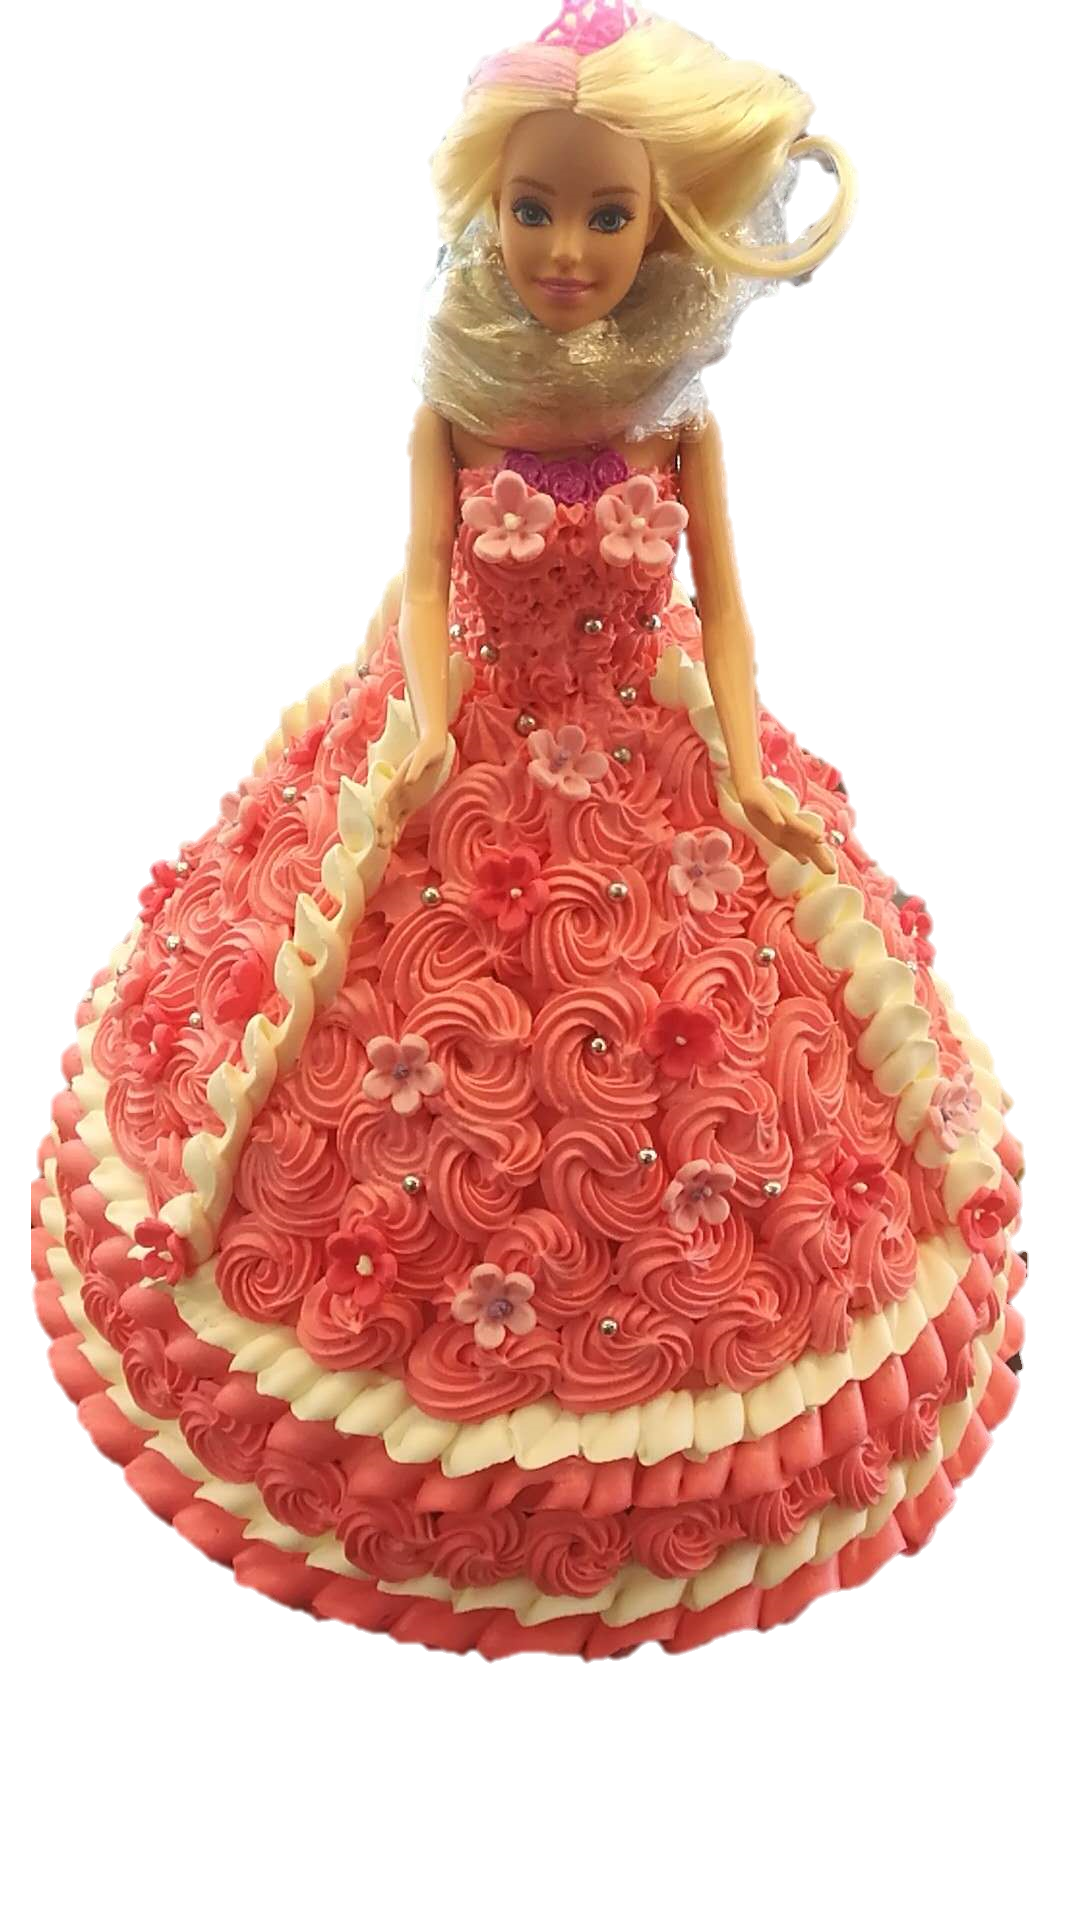 Red Velvet Doll cake | How to make red velvet cake | Princess doll cake |  Super moist redvelvet cake - YouTube